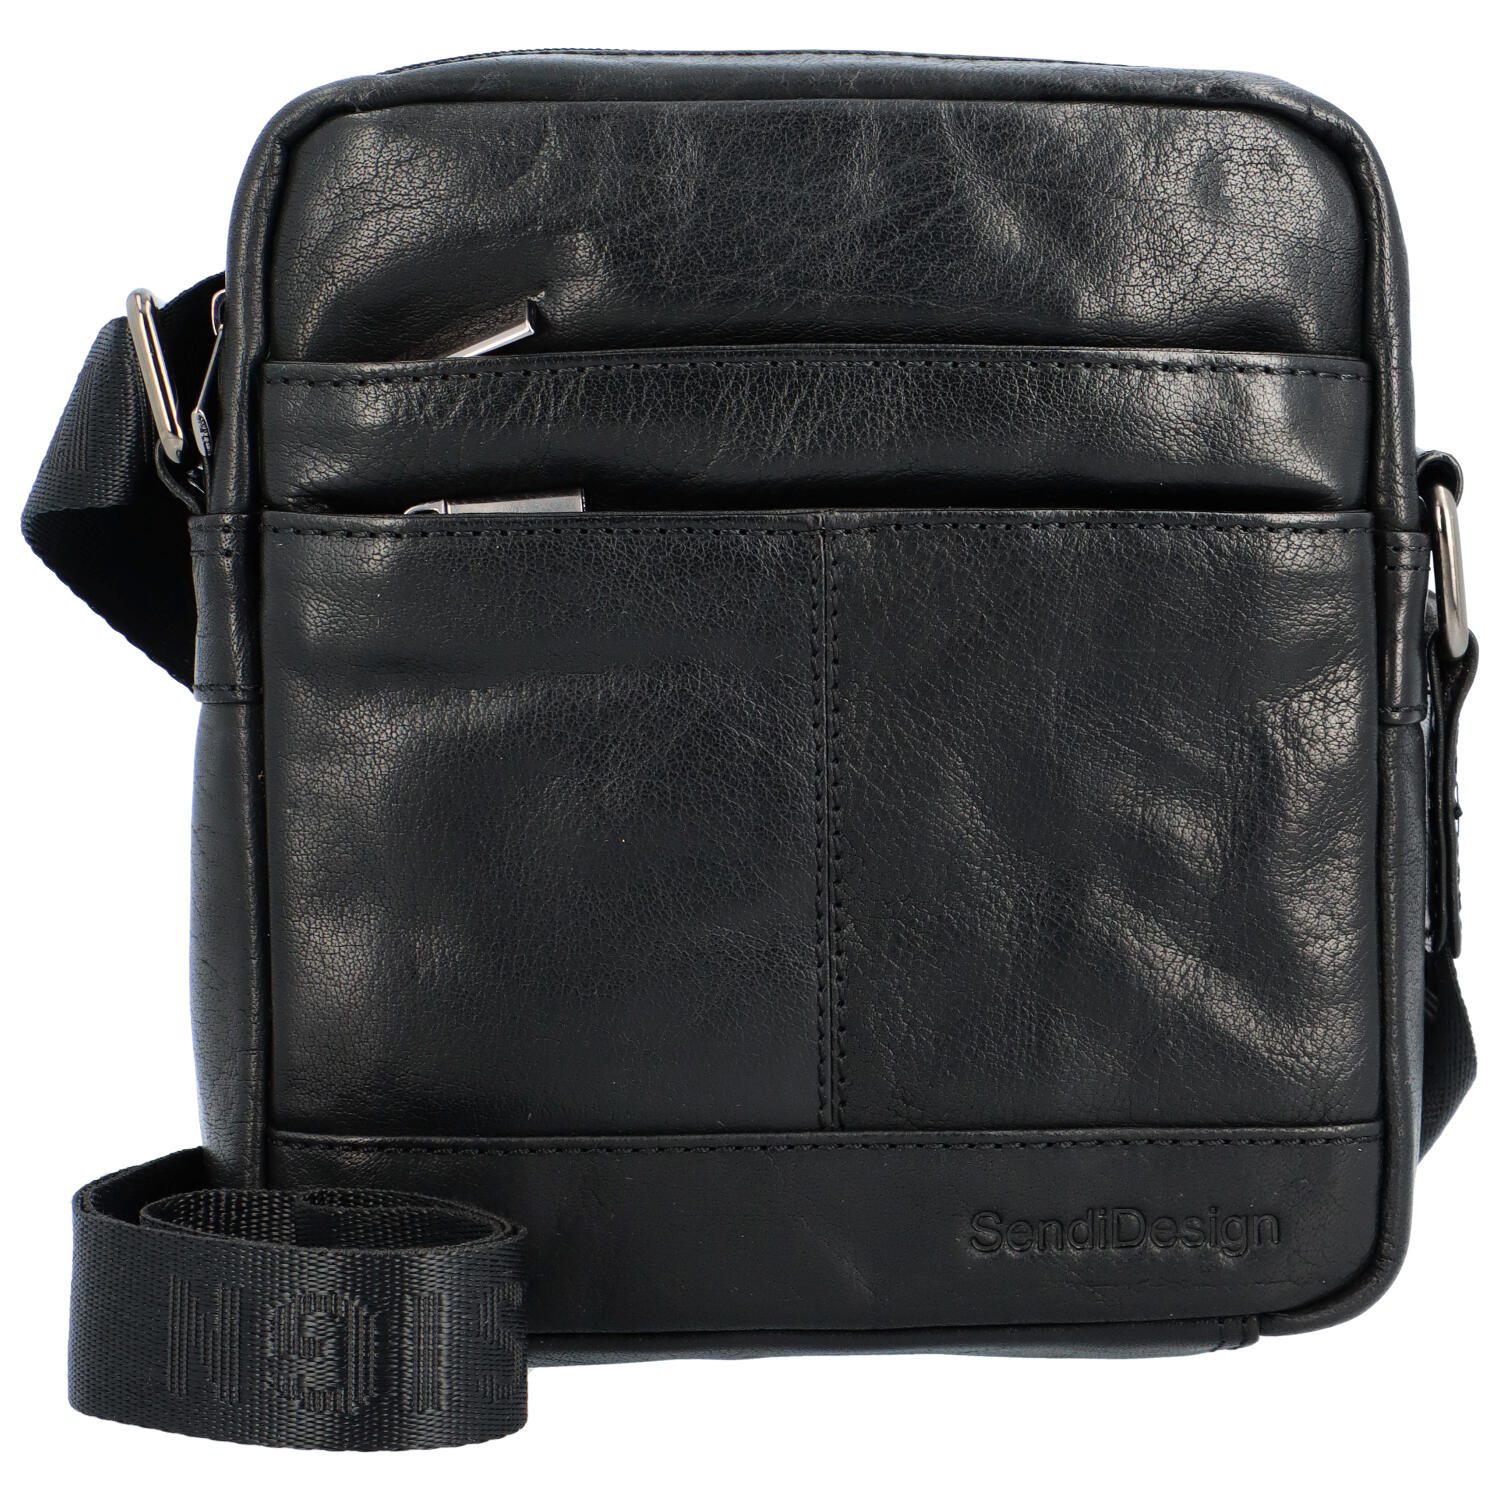 Pánska kožená taška čierna - SendiDesign Shaper B čierna